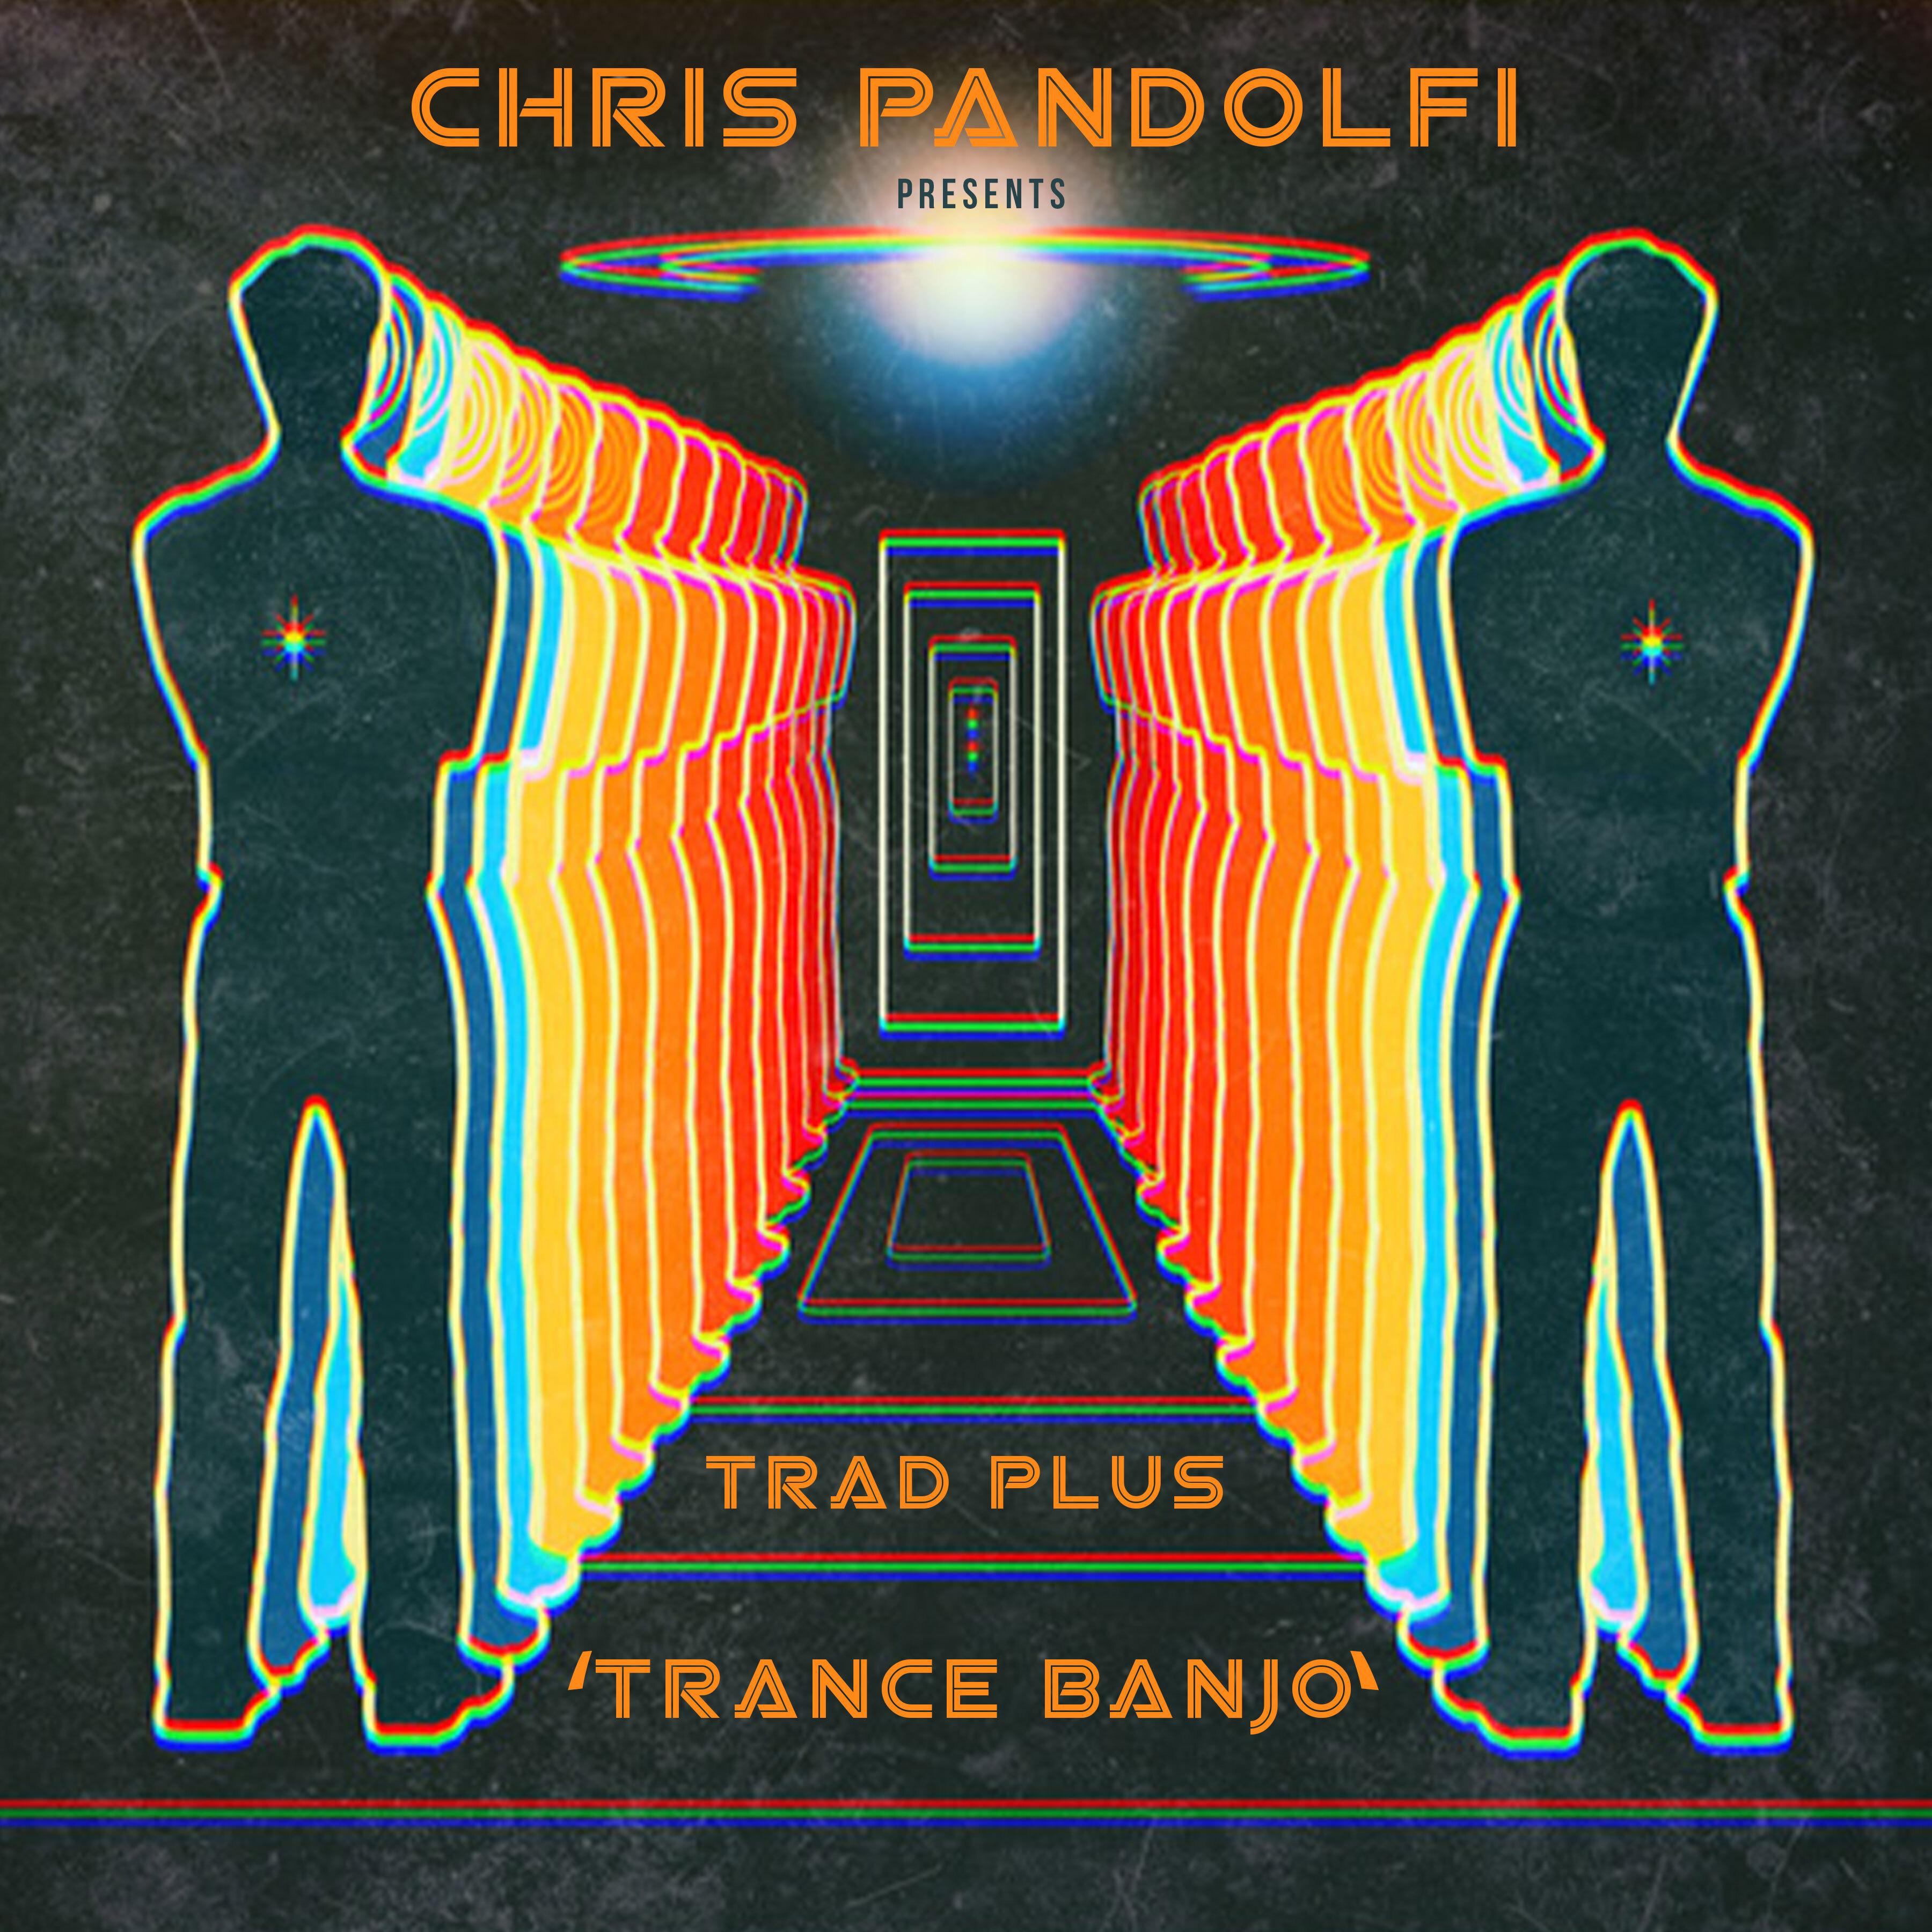 Chris Pandolfi | 'Trance Banjo' | Review 